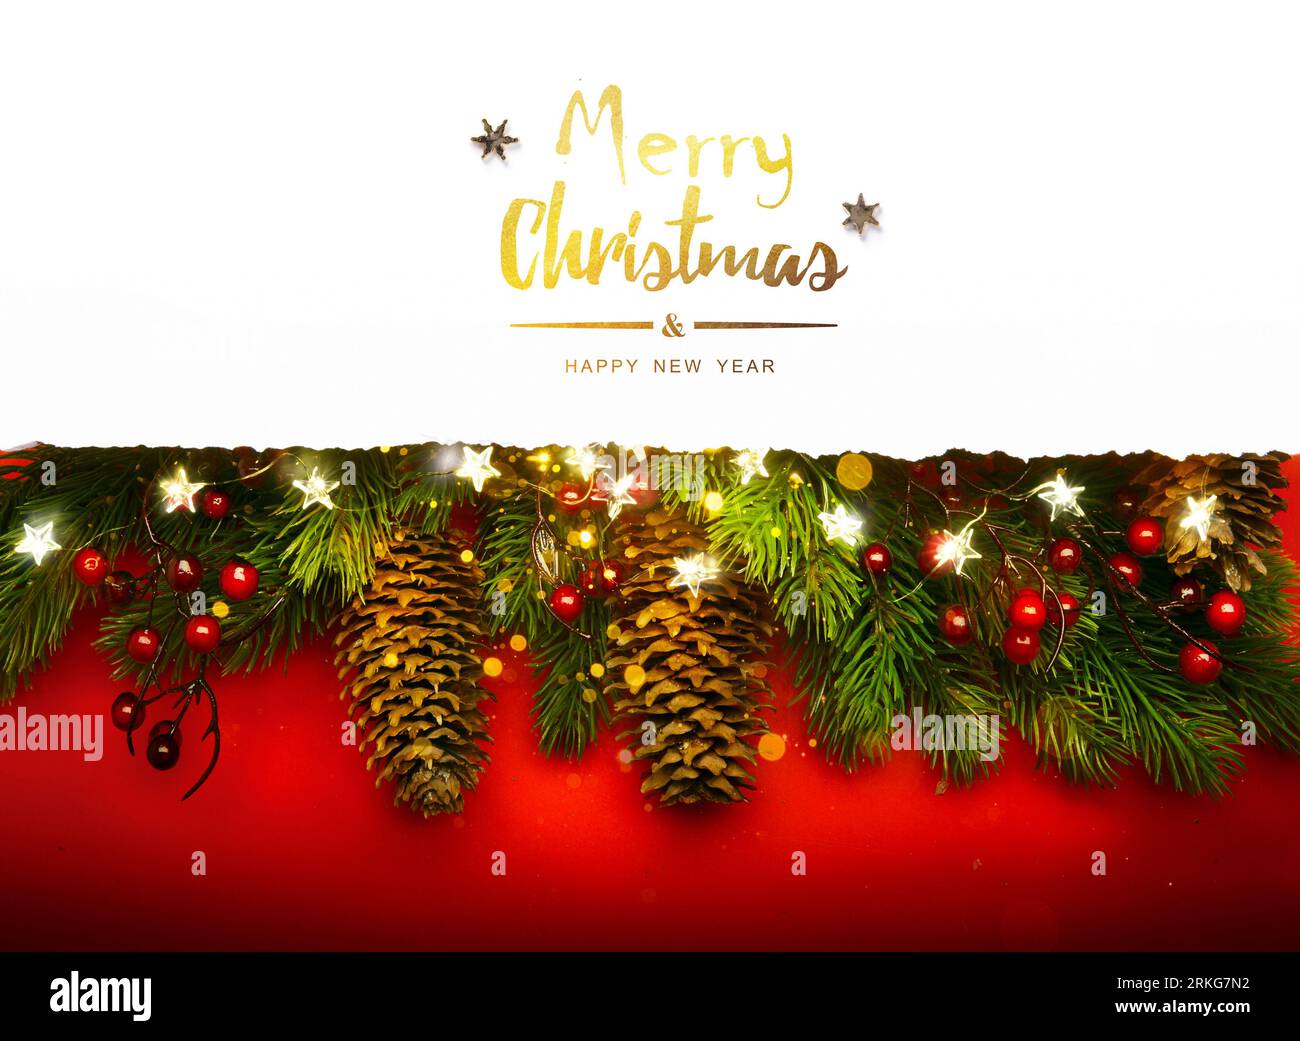 Motif banderole de Noël ou cartes de vœux. Arrière-plan Noël de lumières étincelantes guirlande, avec cadeaux de vacances et branche d'arbre de Noël Banque D'Images